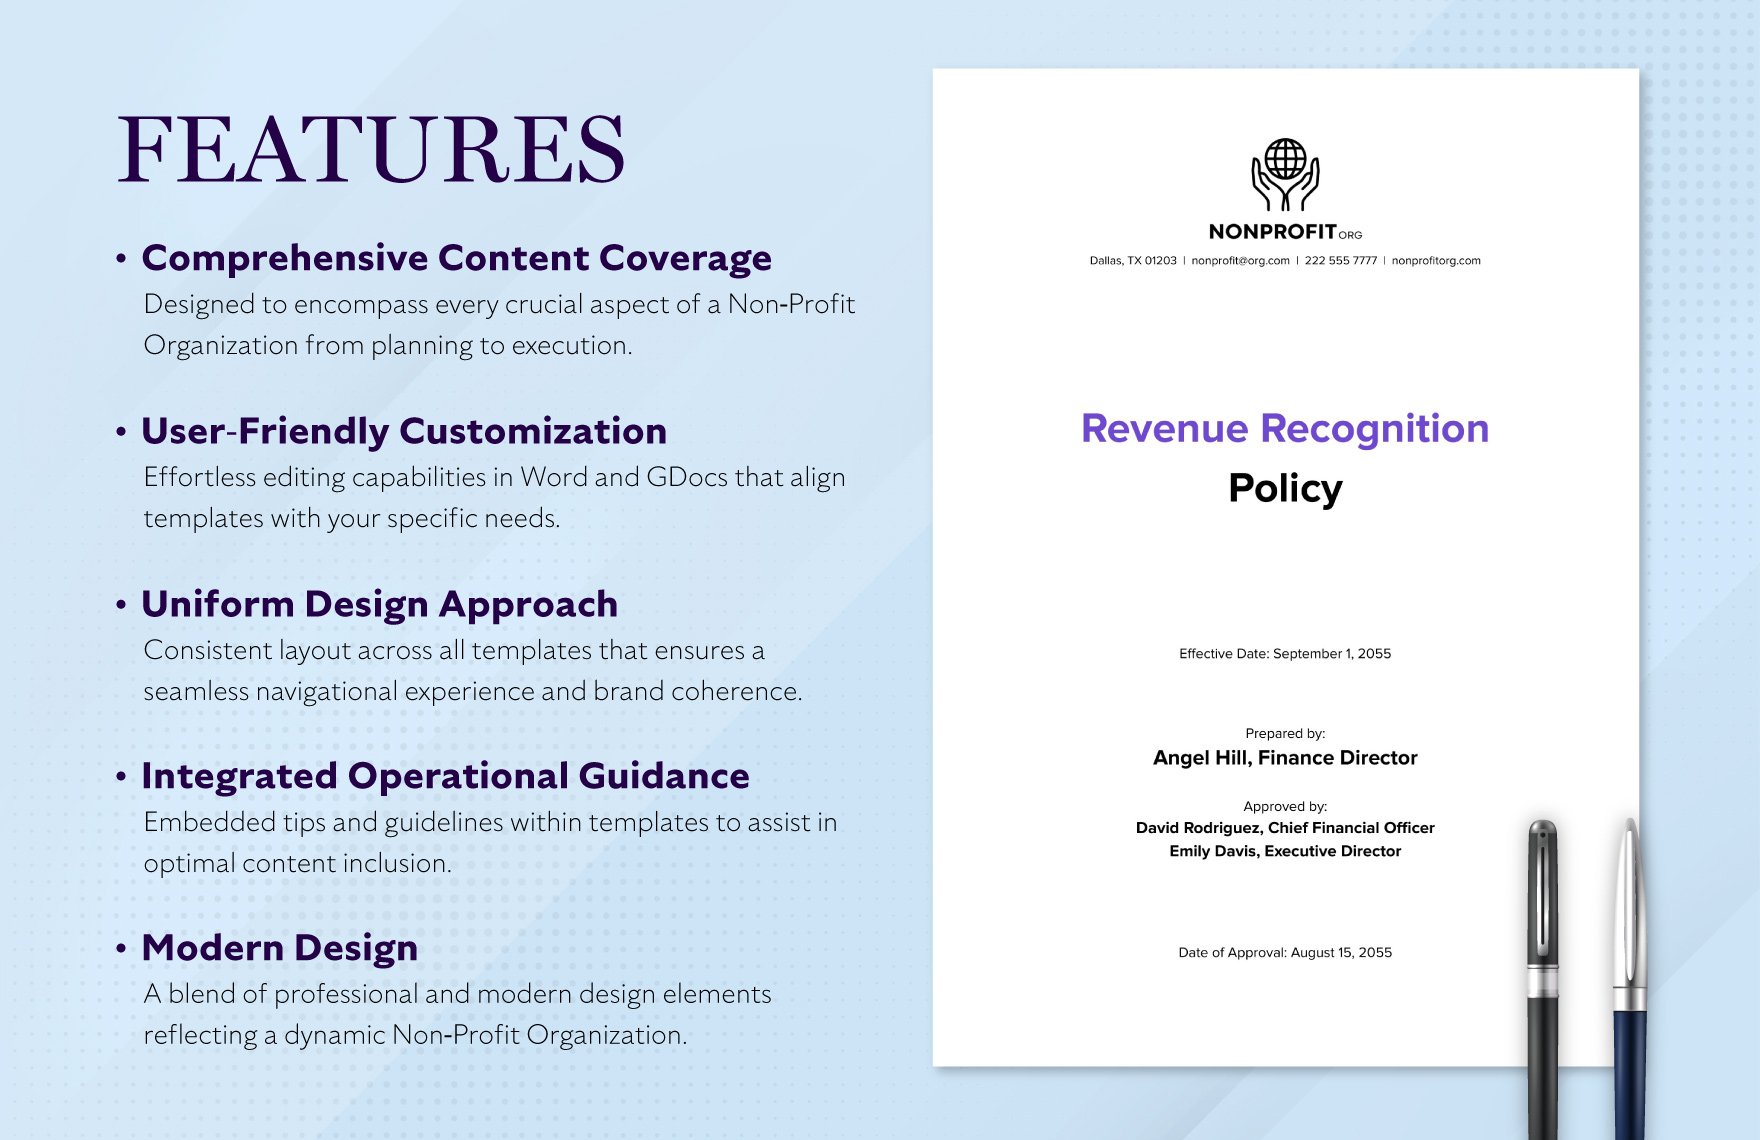 Nonprofit Organization Revenue Recognition Policy Template in PDF